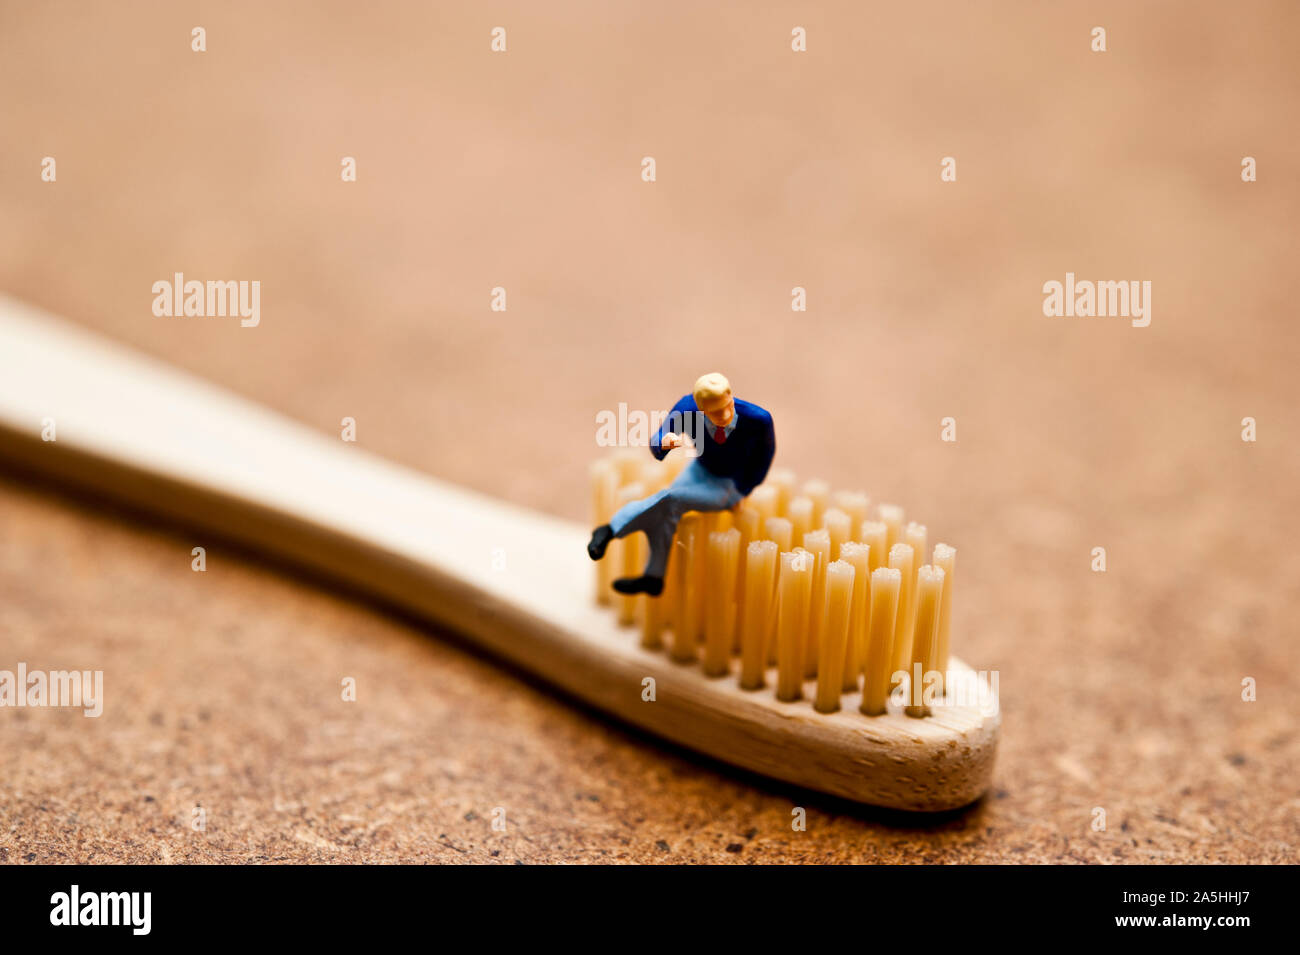 Miniatur Figur sitzt auf einem Bambus Zahnbürste - ökologisch bewusste Verbraucher Konzept Stockfoto